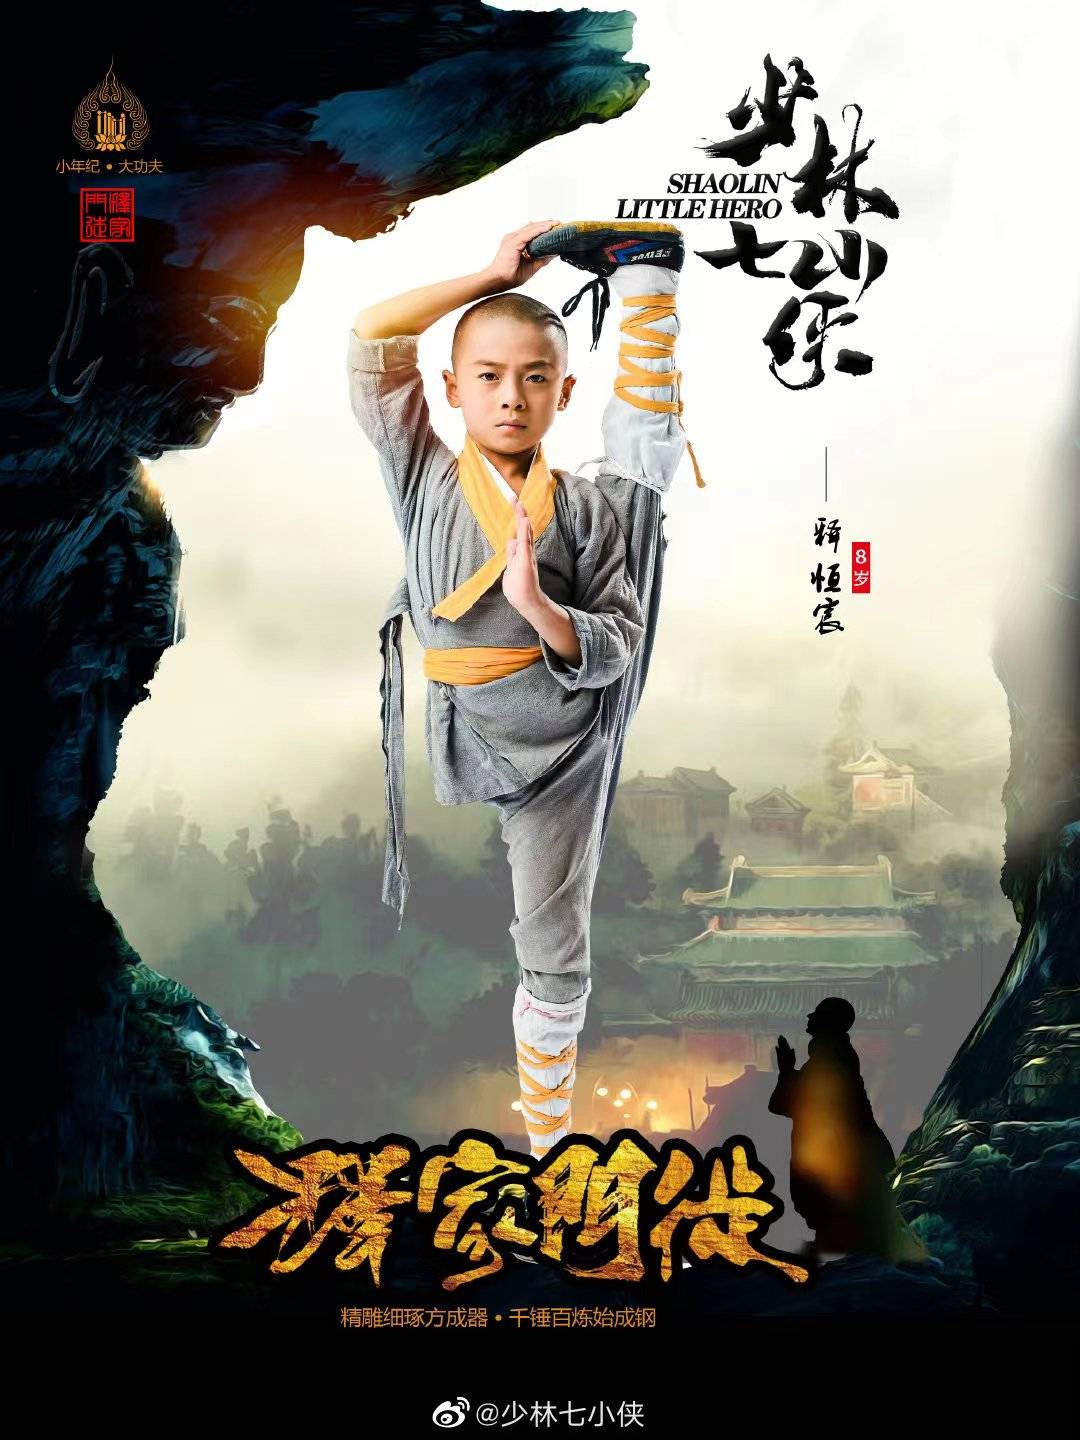 少林小英雄 (Little Hero from Shaolin, 2019) :: 一切关于香港，中国及台湾电影